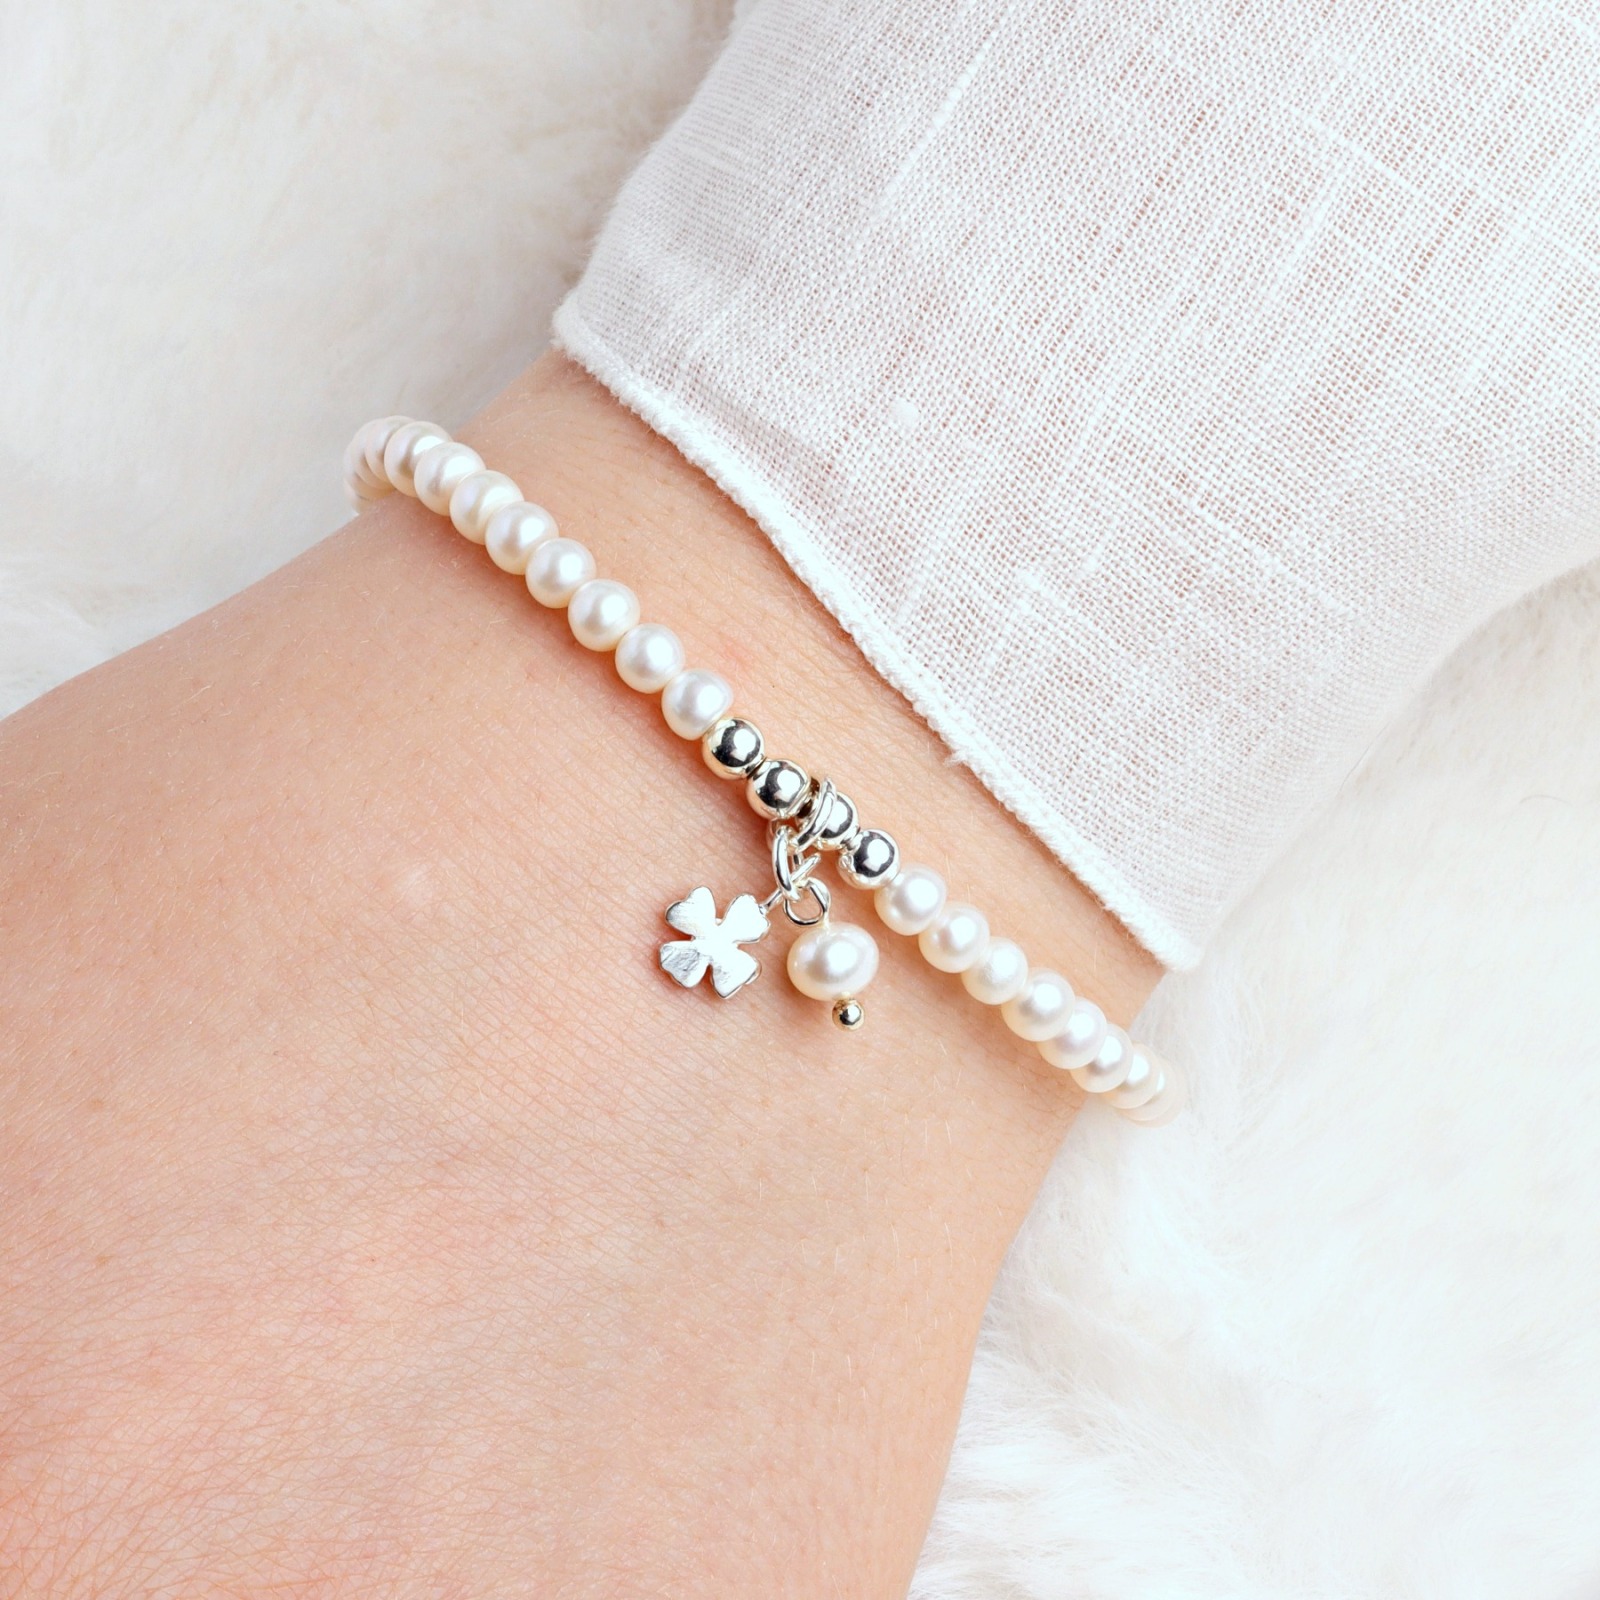 Glücks-Armband Silber aus echten Perlen mit Kleeblatt, Glücksbringer-Geschenk für Frauen und